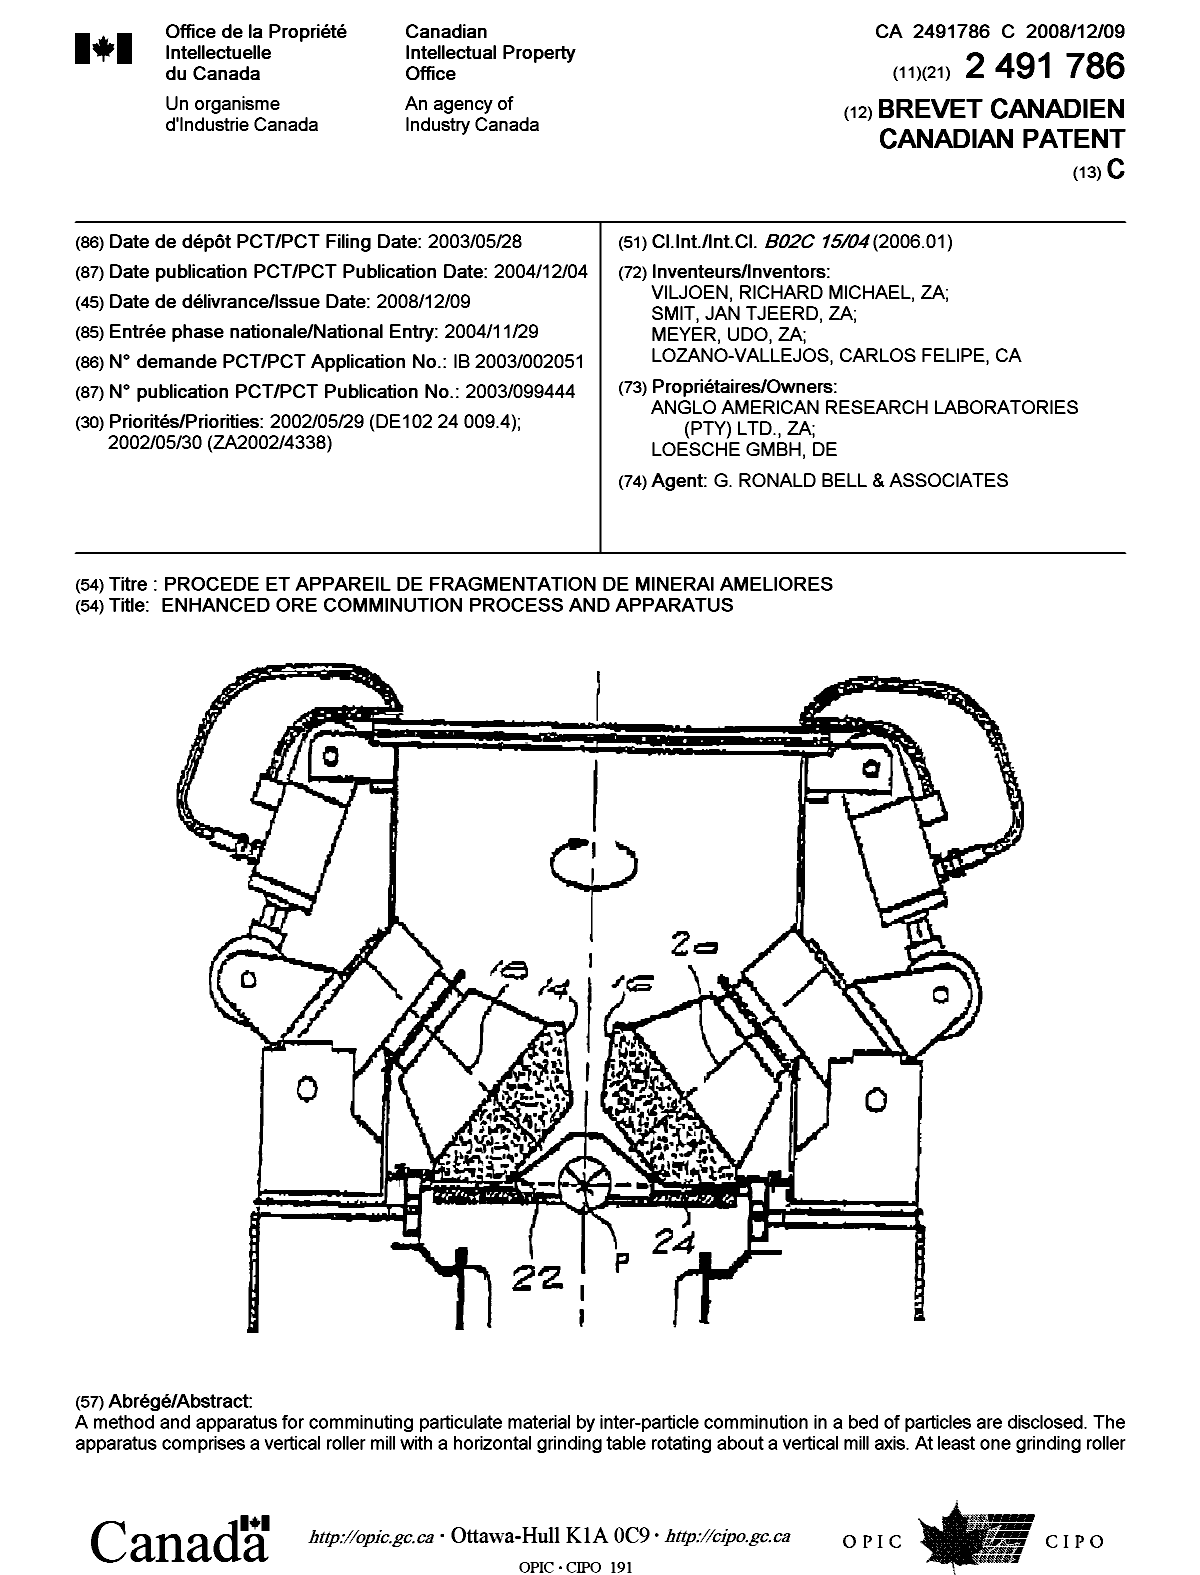 Document de brevet canadien 2491786. Page couverture 20081121. Image 1 de 2